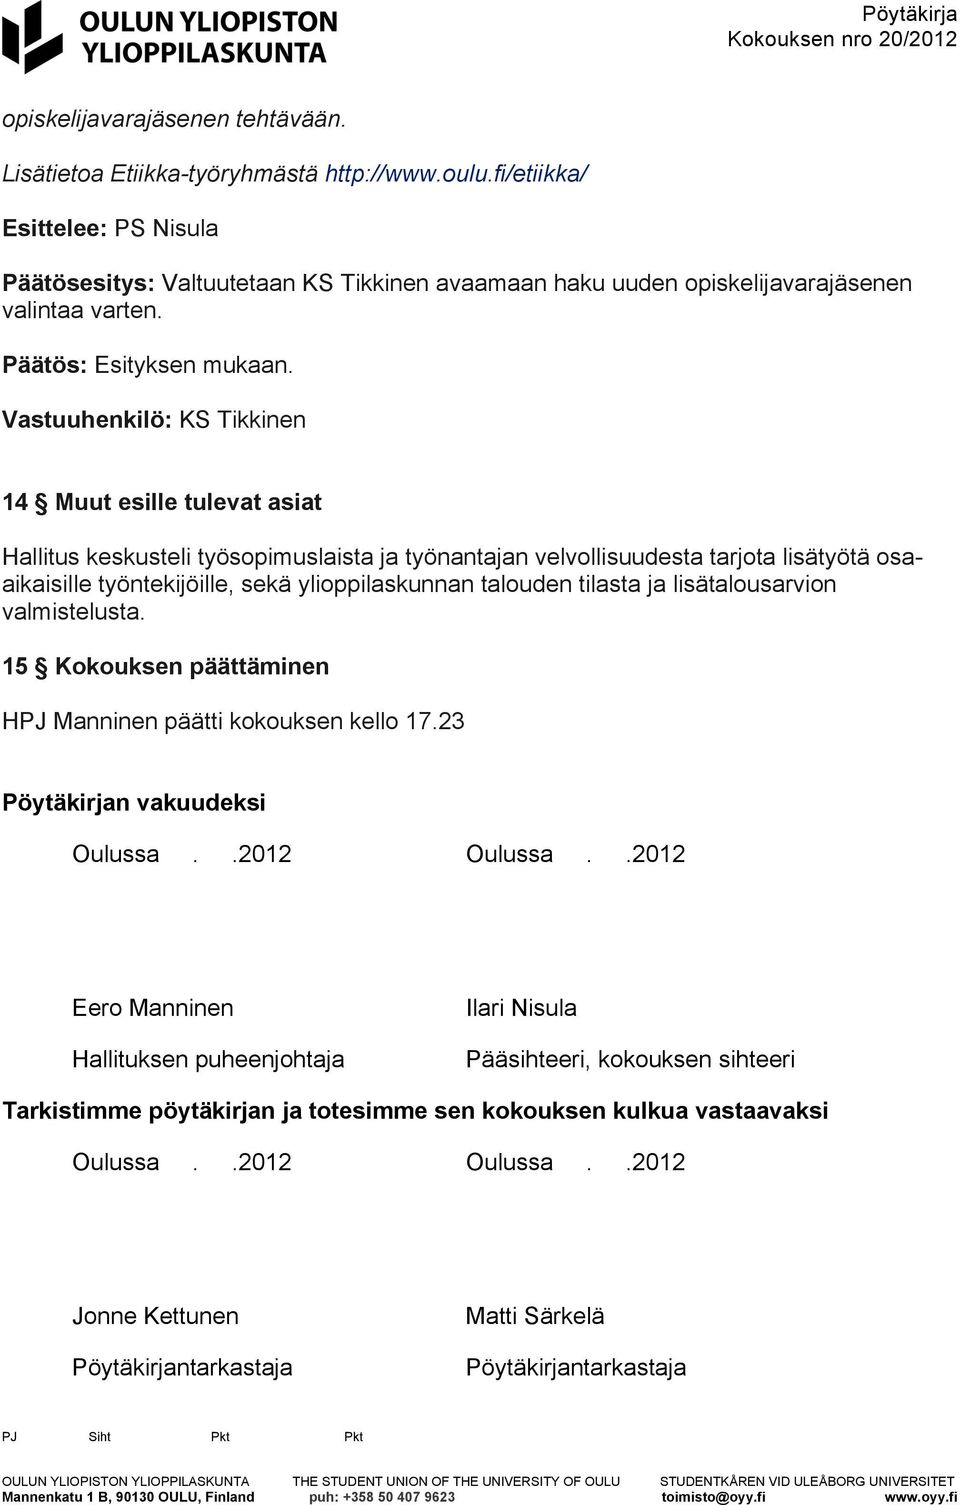 talouden tilasta ja lisätalousarvion valmistelusta. 15 Kokouksen päättäminen HPJ Manninen päätti kokouksen kello 17.23 Pöytäkirjan vakuudeksi Oulussa..2012 Oulussa.